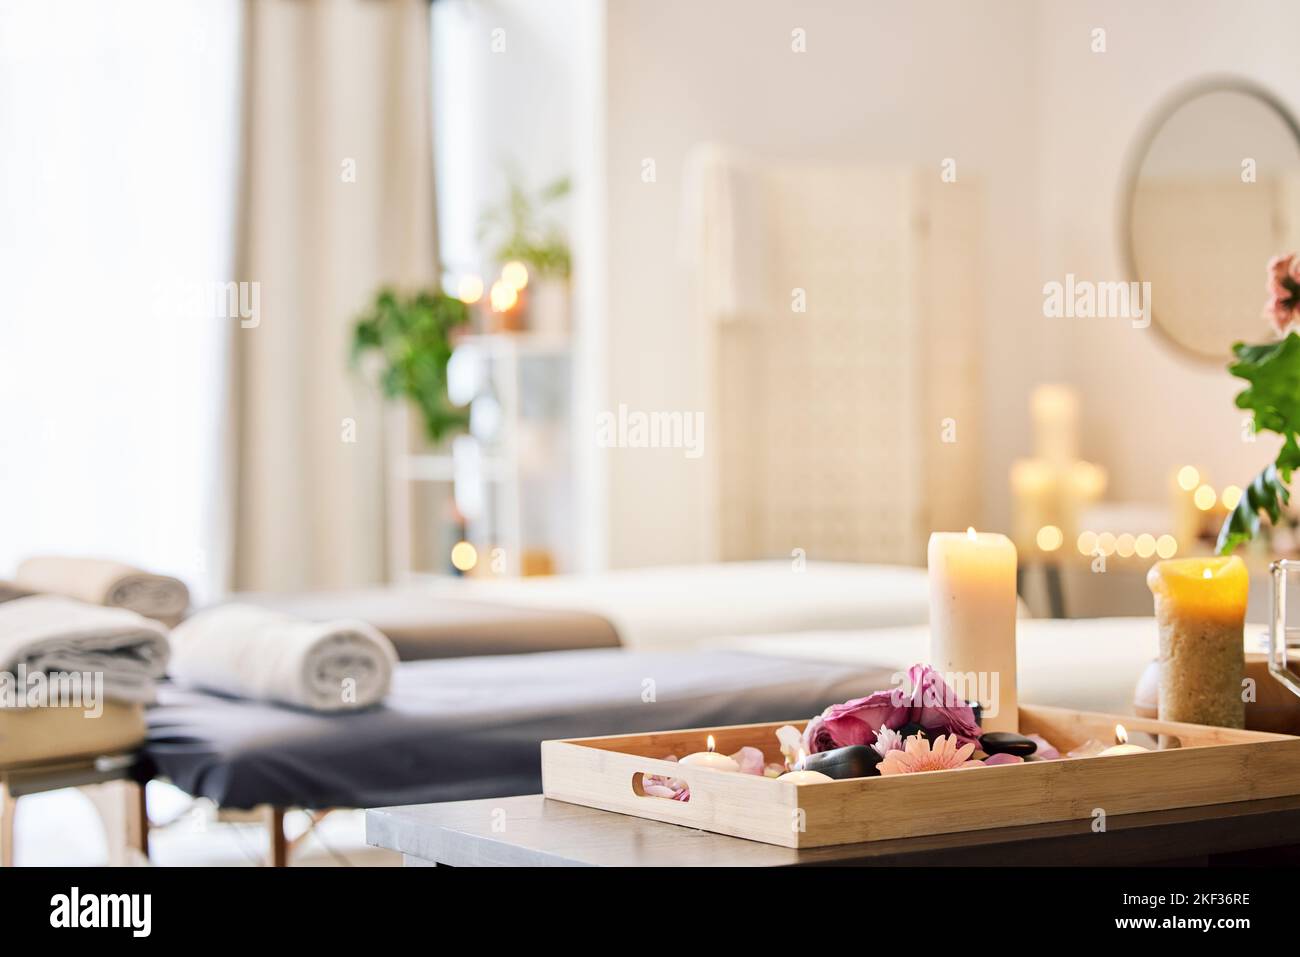 Candela, spa e relax con trattamento di aromaterapia in un vassoio in una  stanza per il